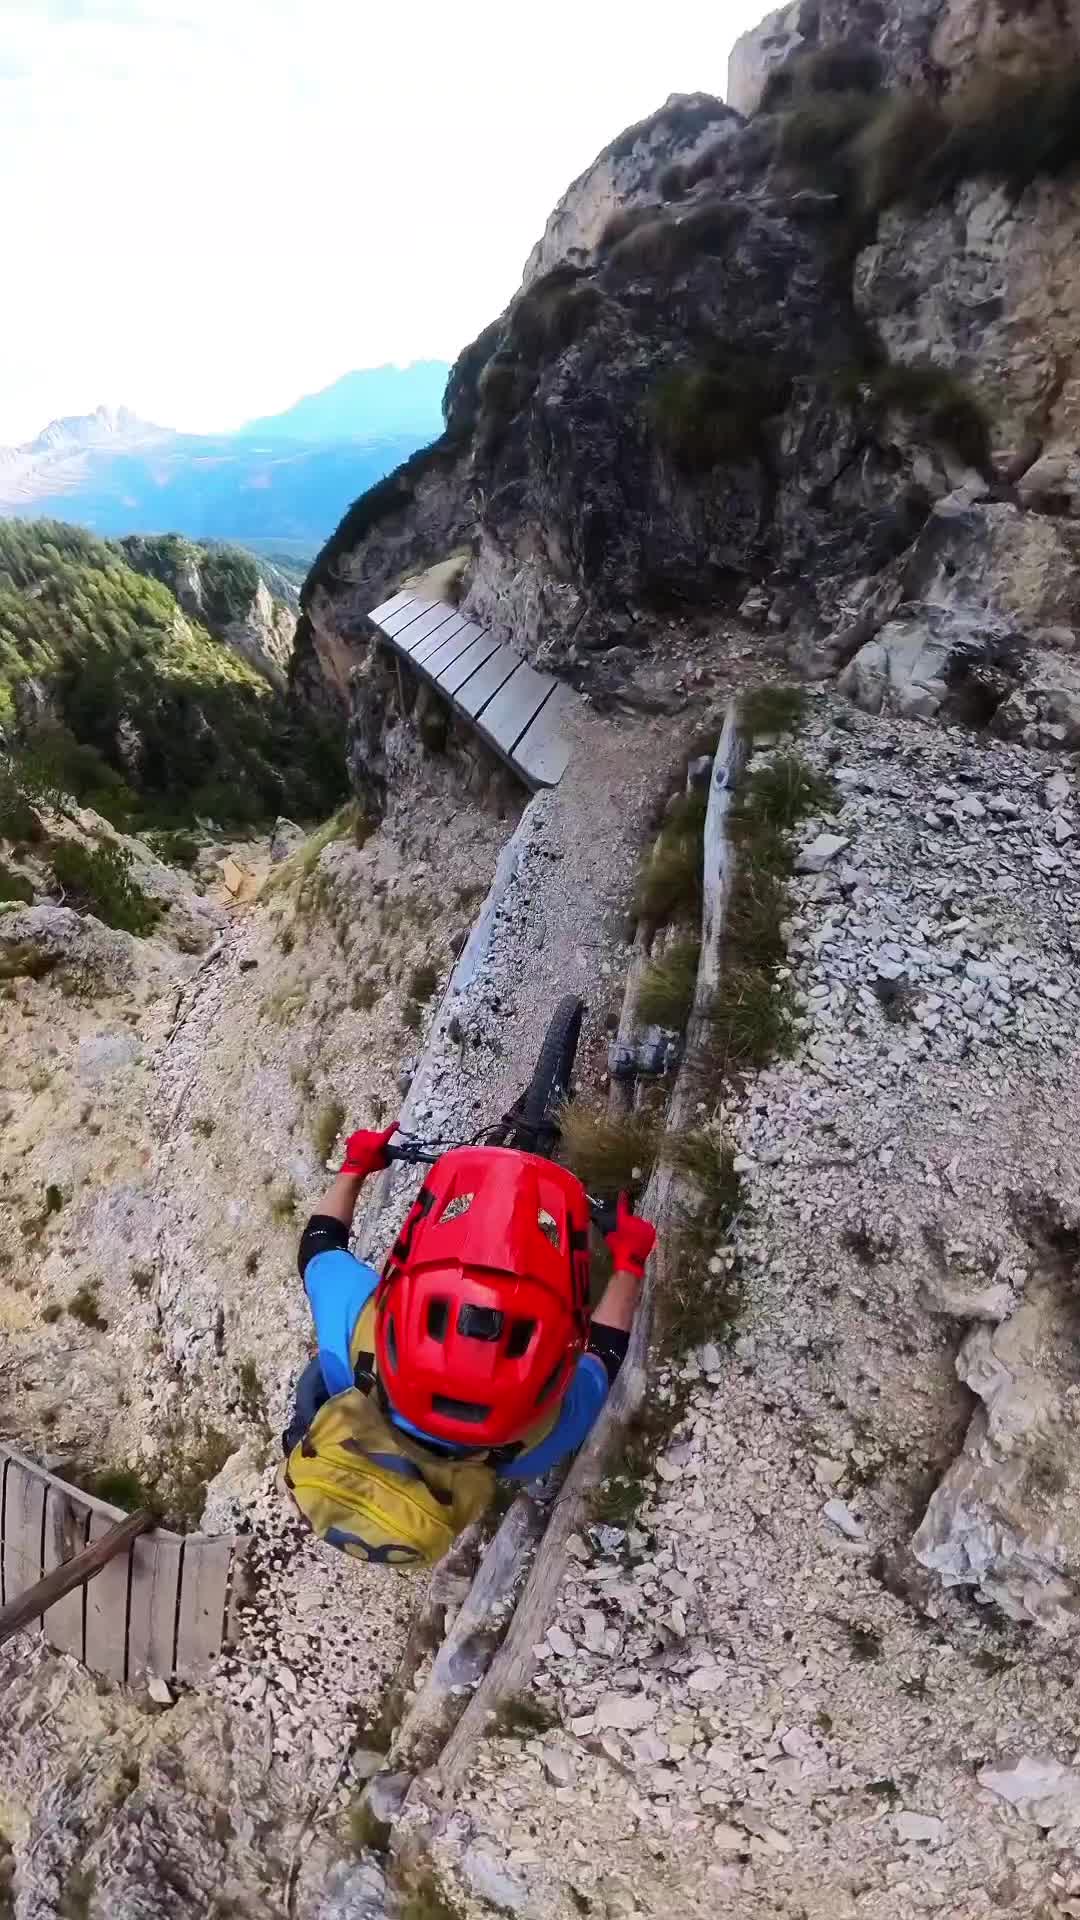 Thrilling MTB Adventure on Dolomites' Exposed Trails